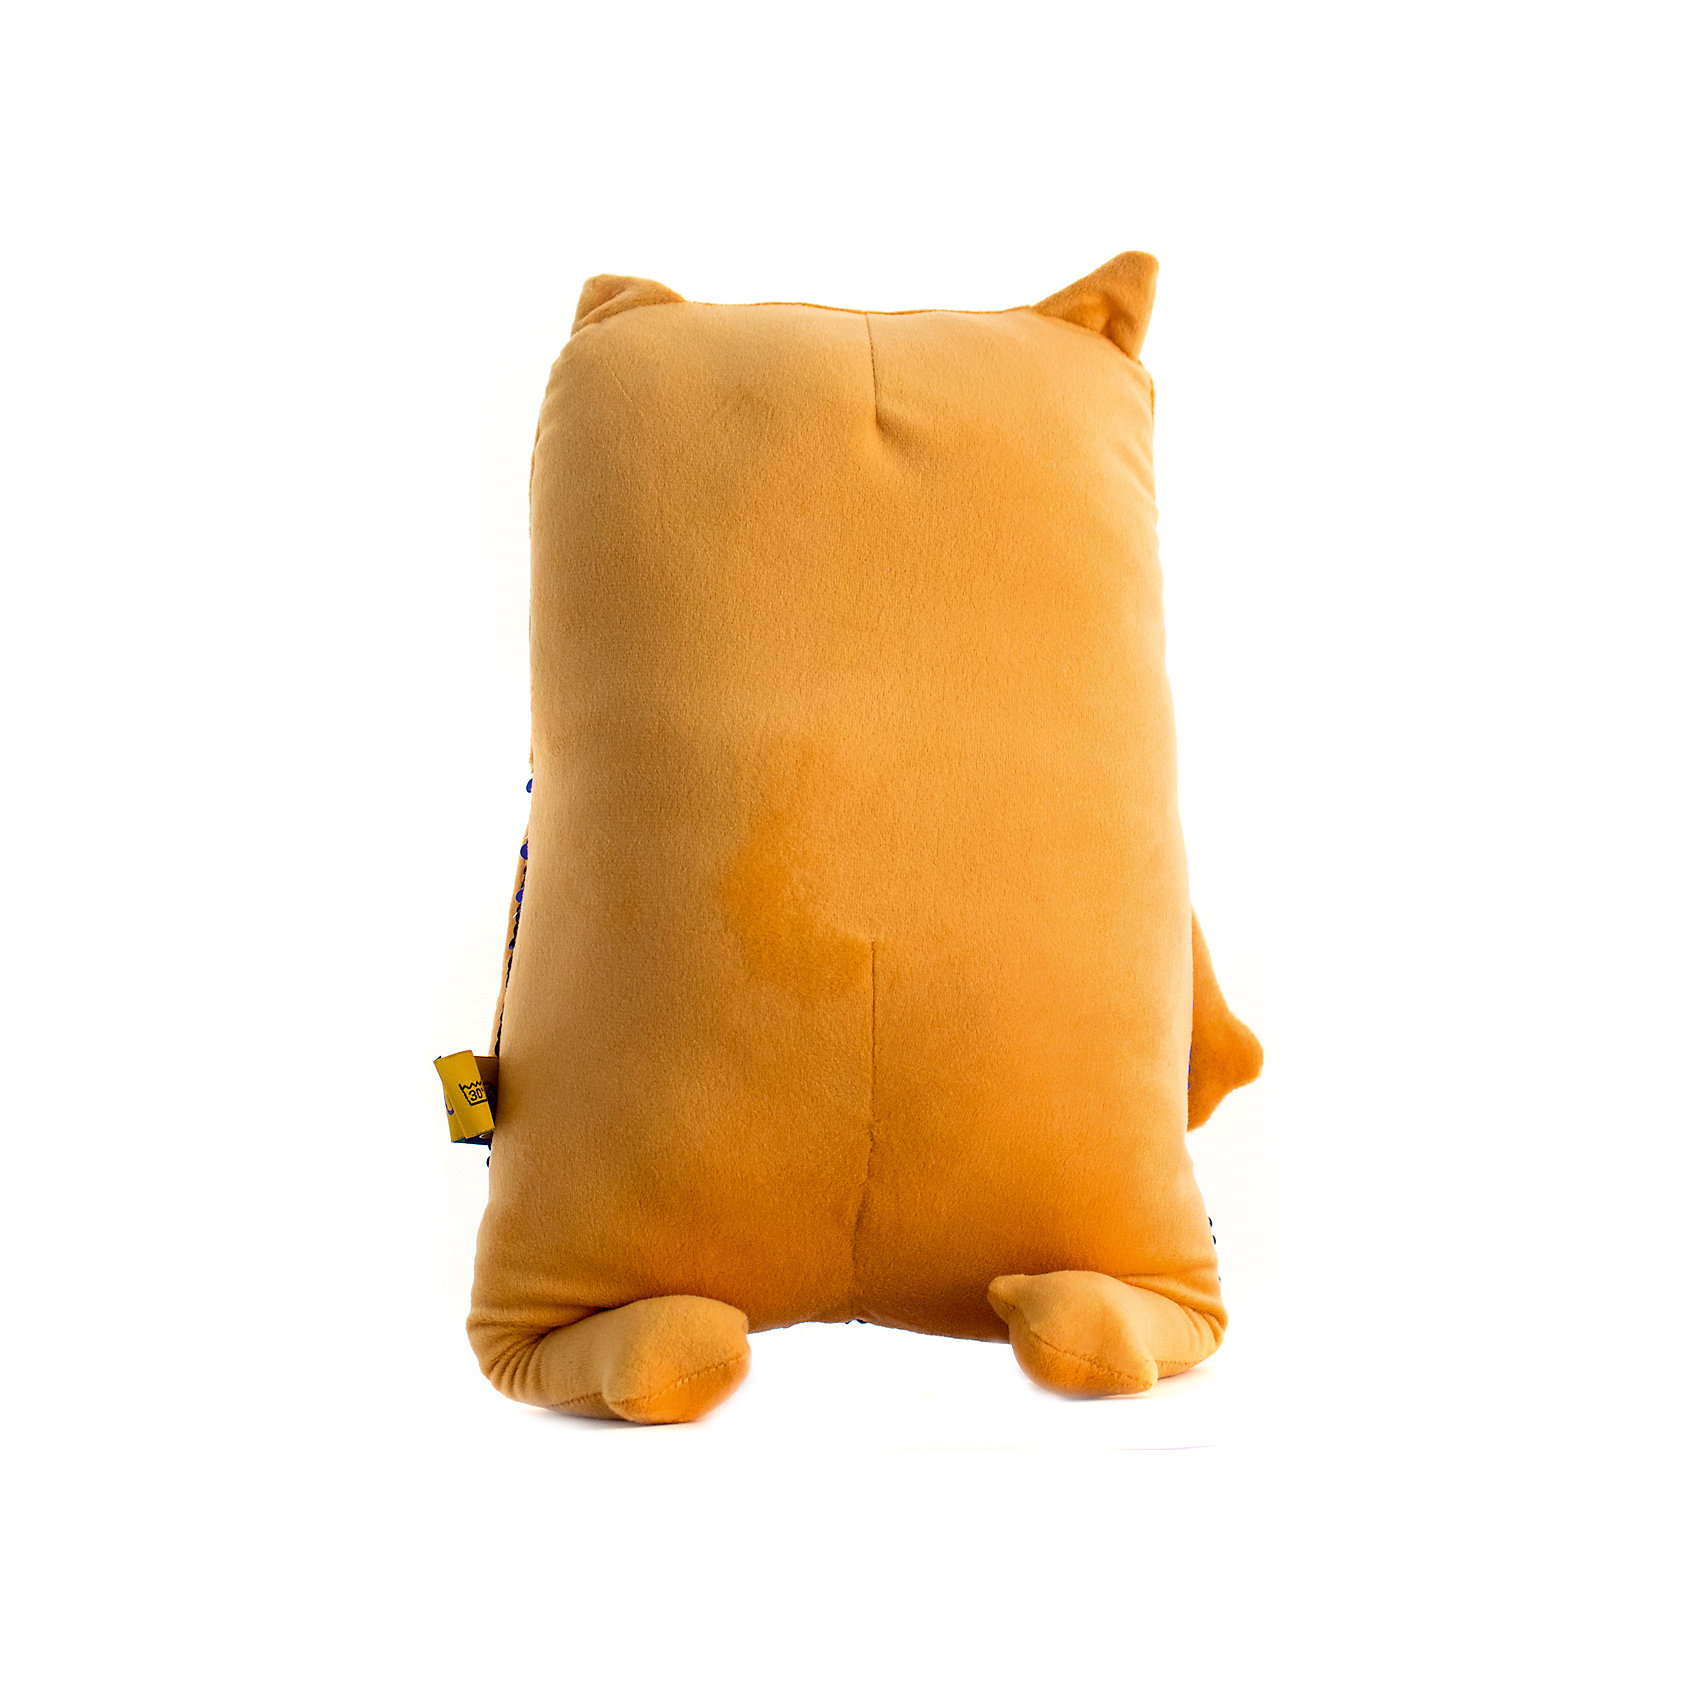 Мягкая игрушка Кот персиковый, 43 см Tallula 13788025